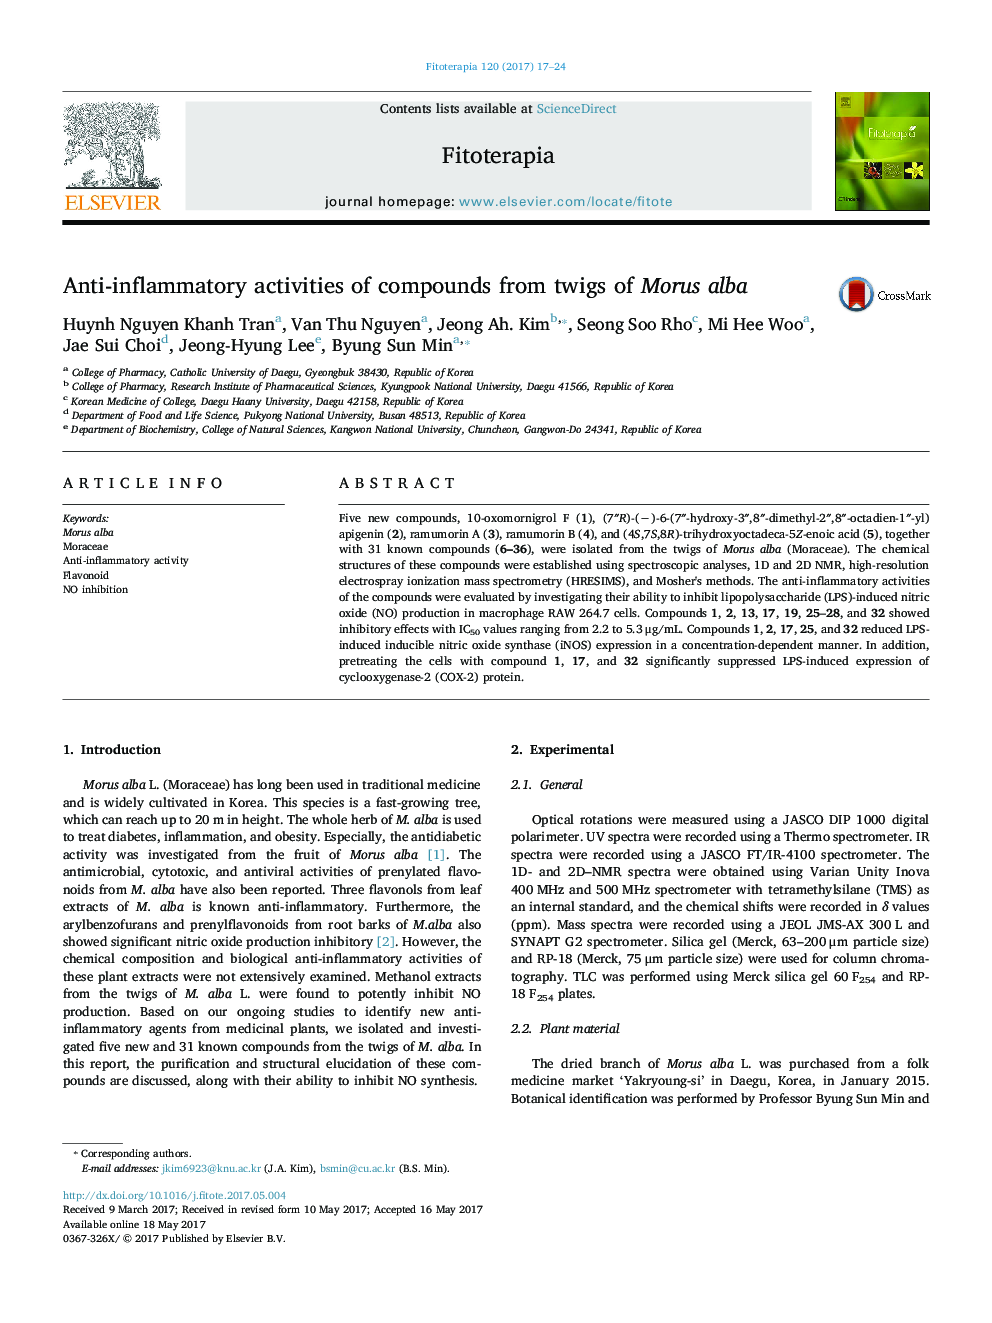 فعالیت ضد التهابی ترکیبات از شاخه های مورس آلبا 